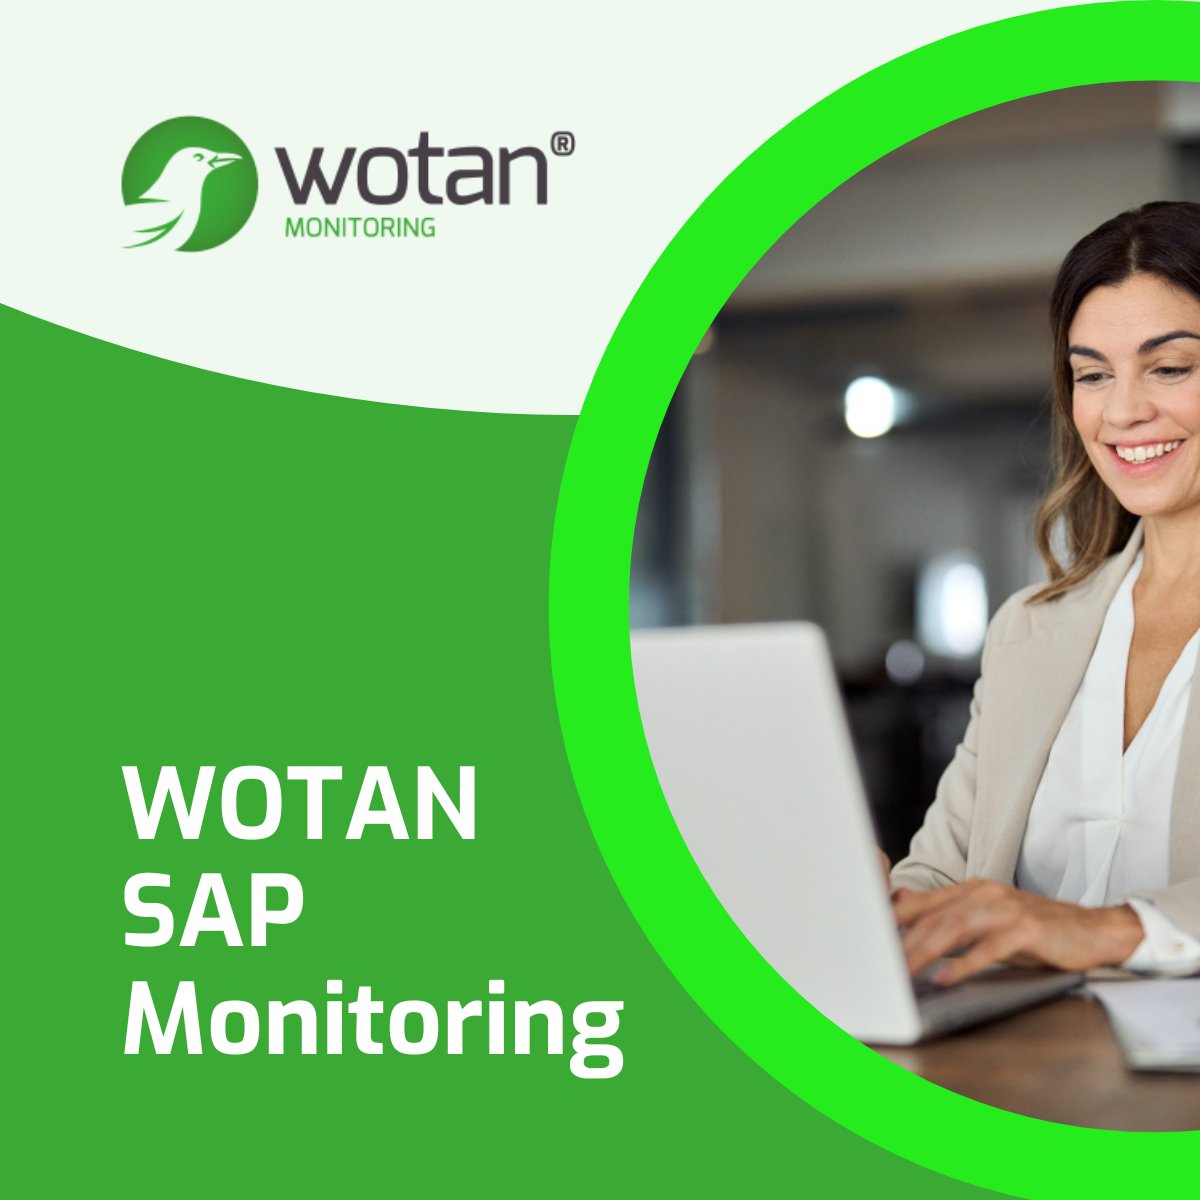 🚀 Optimieren Sie Ihre SAP-Systeme mit WOTAN Monitoring! 🖥️
wotan-monitoring.com/de/wotan-sap-m…

#SAP #BusinessIT #SystemMonitoring #TechSolutions #WOTANSAPMonitoring #WOTANfürSAP